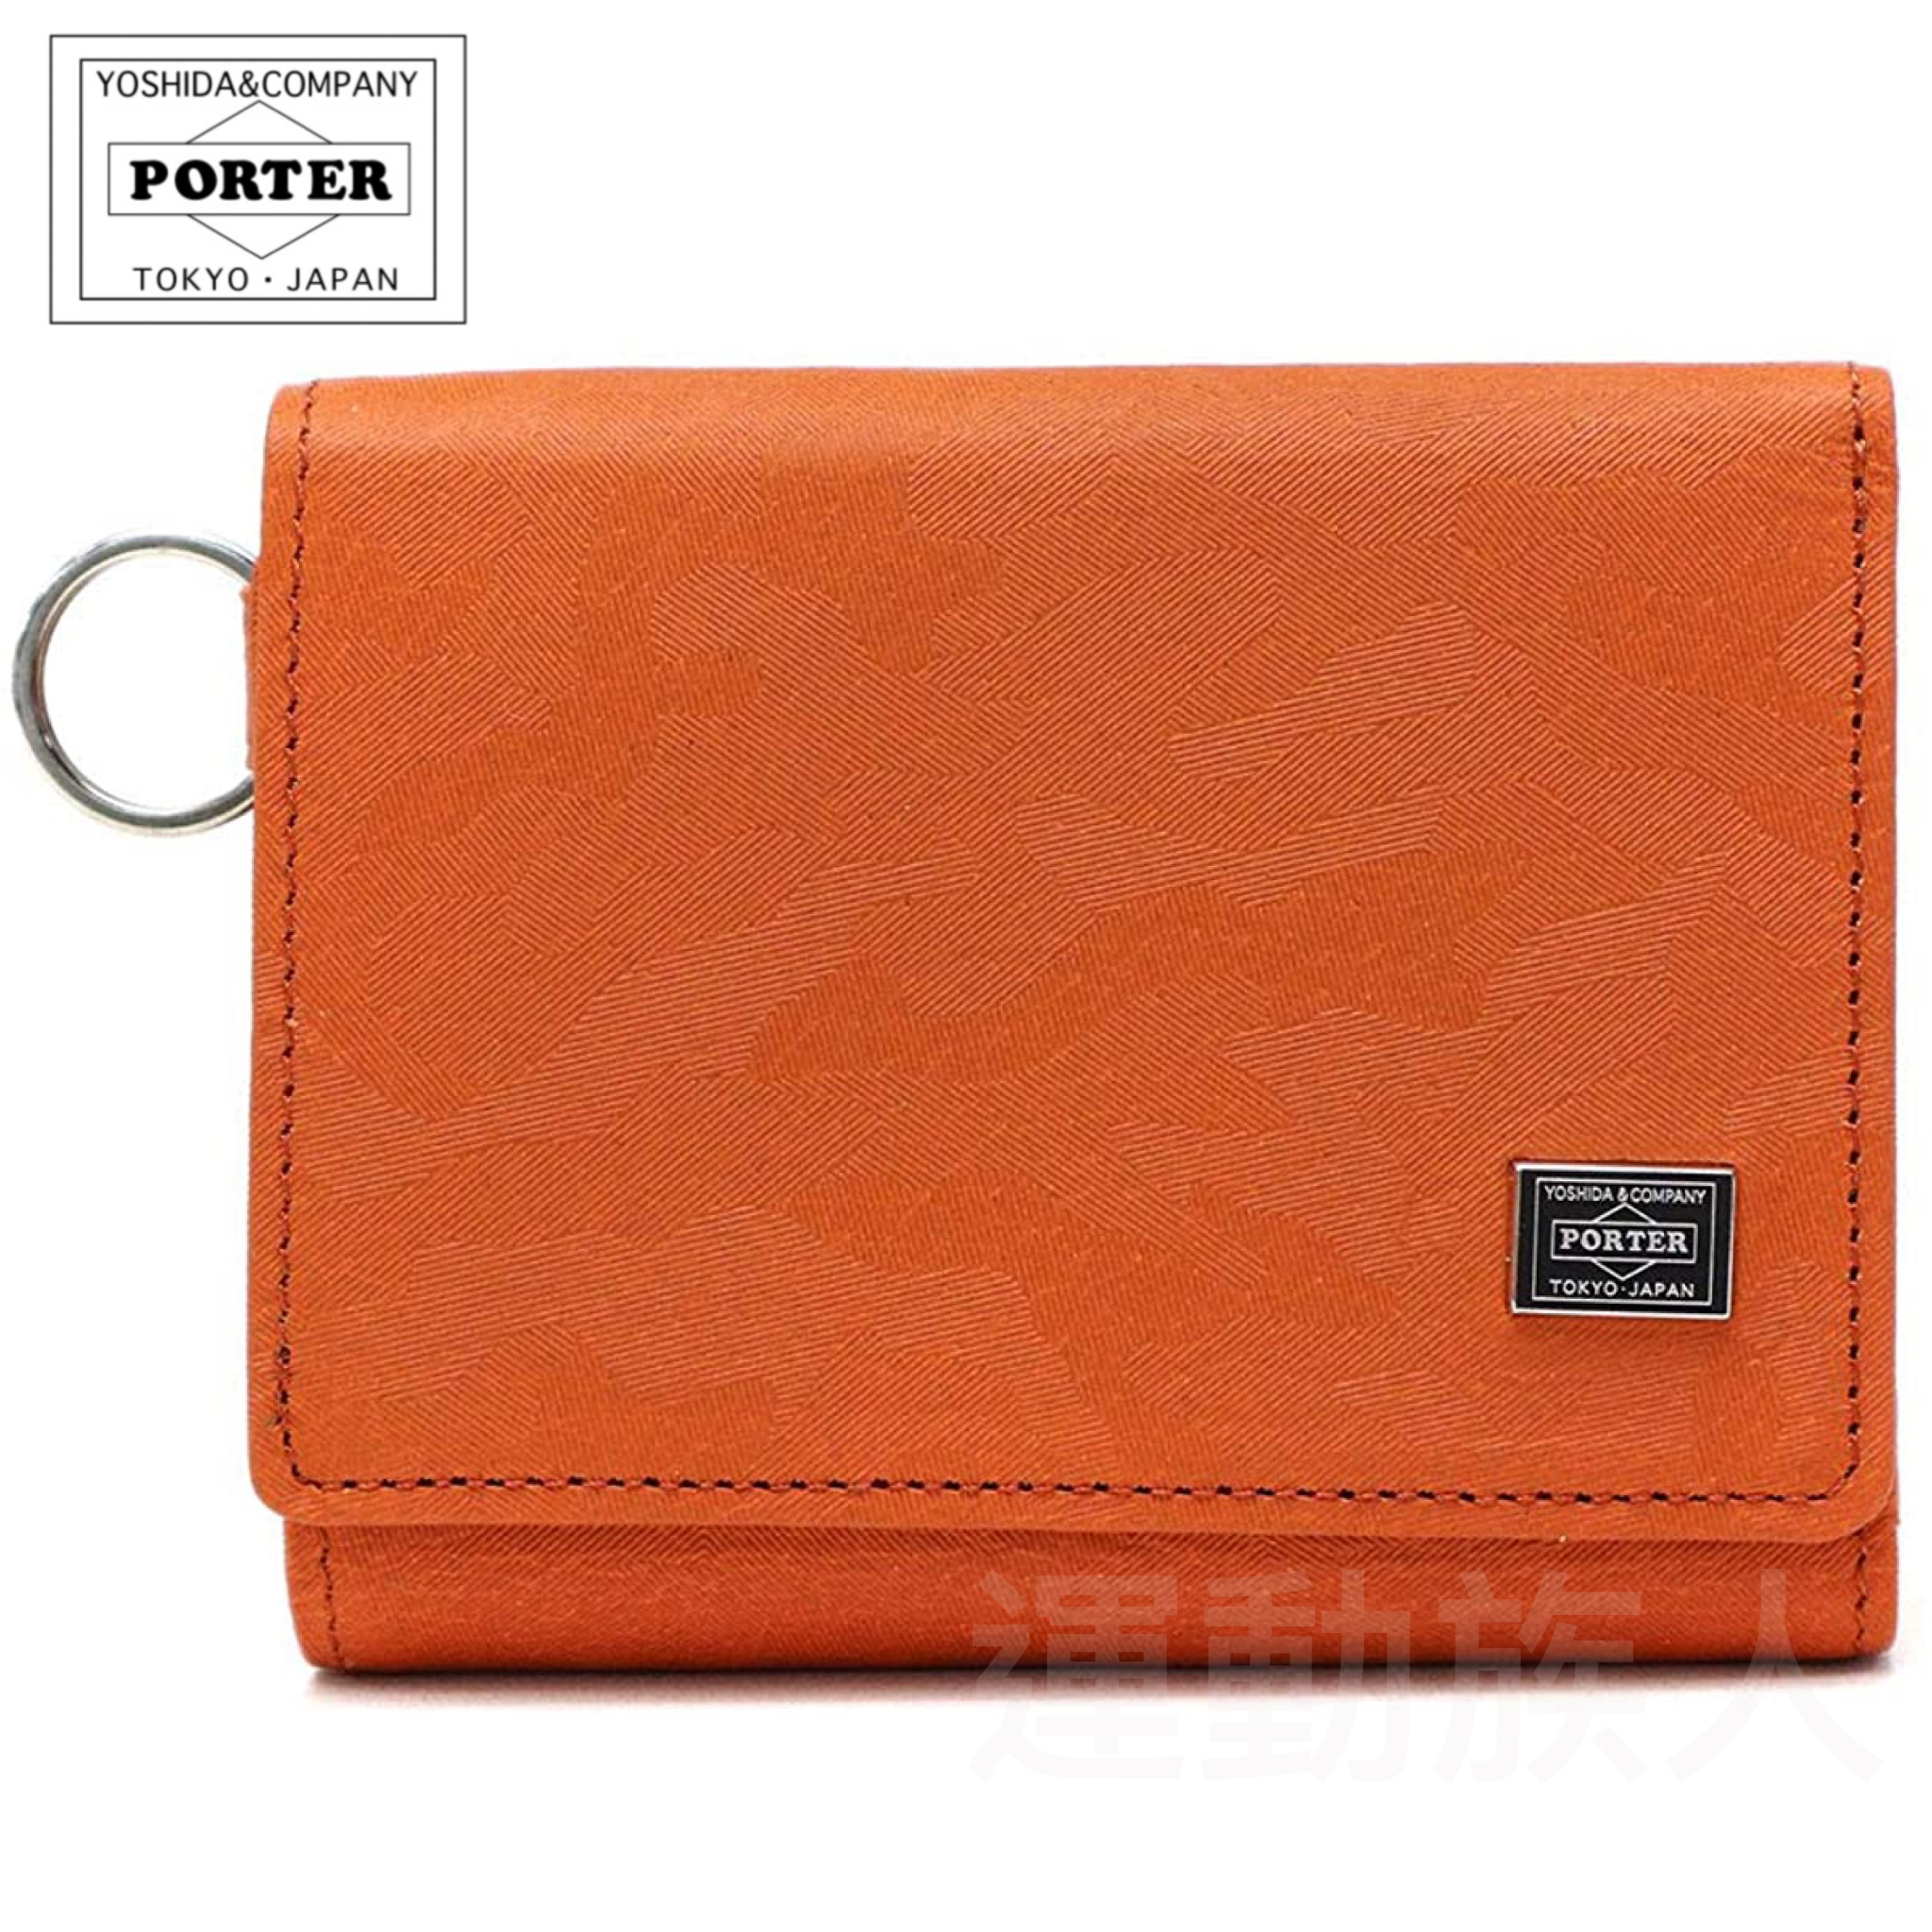 運動族人】Porter Tokyo - Japan WONDER 三折設計輕巧銀包日本直送迷彩橙色